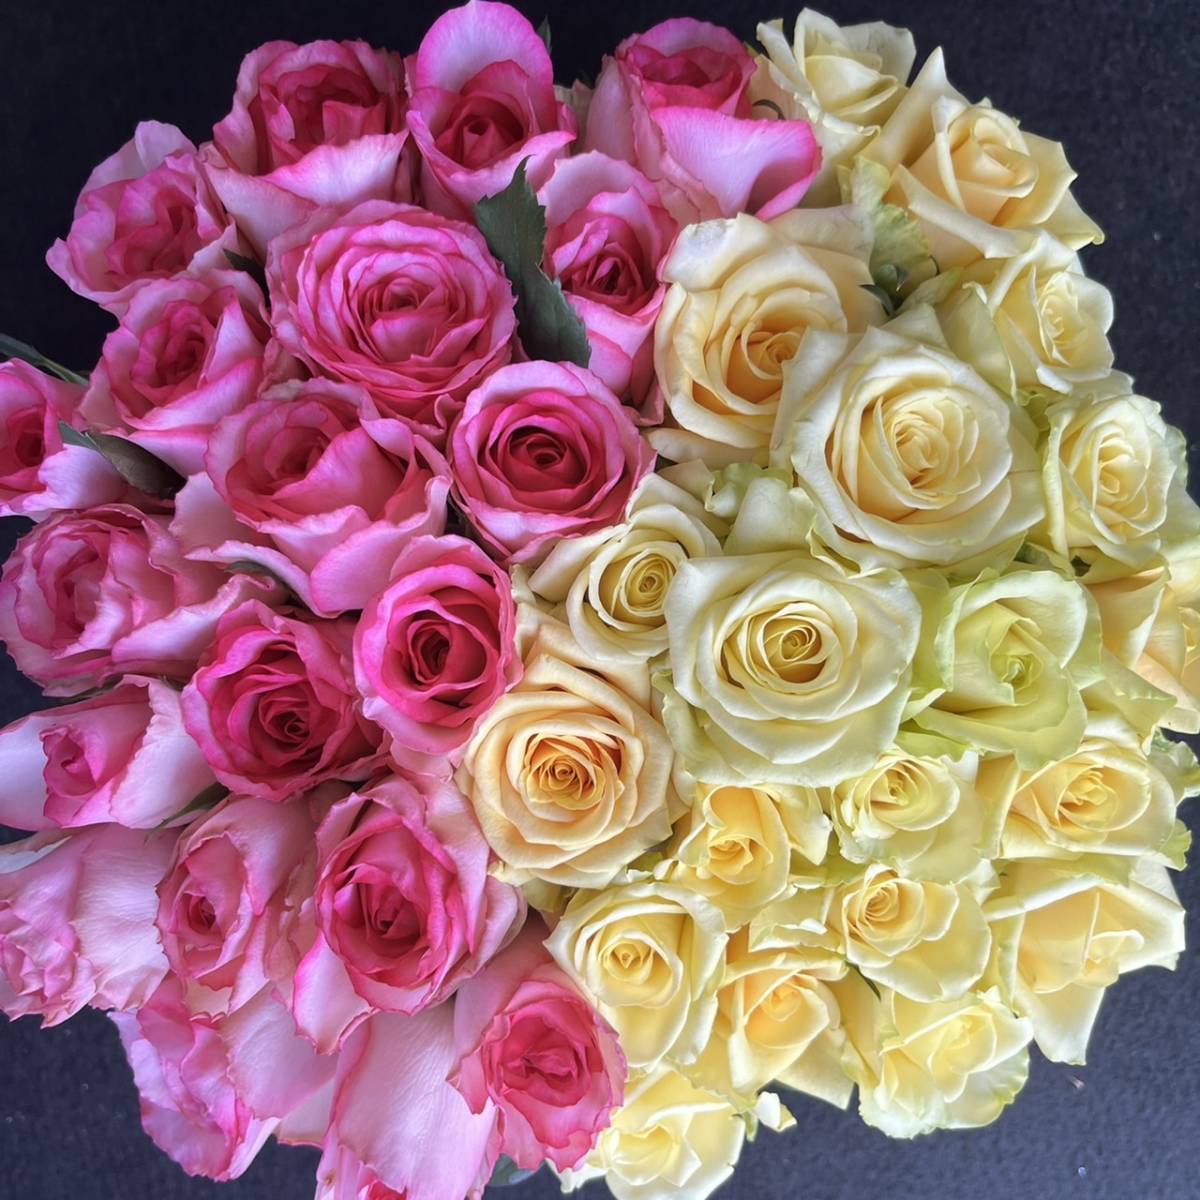  прямая поставка от производителя!! свежесть выдающийся! роза ( срезанные цветы * живые цветы )* розовый & желтый половина and половина * 30.SM размер 40шт.